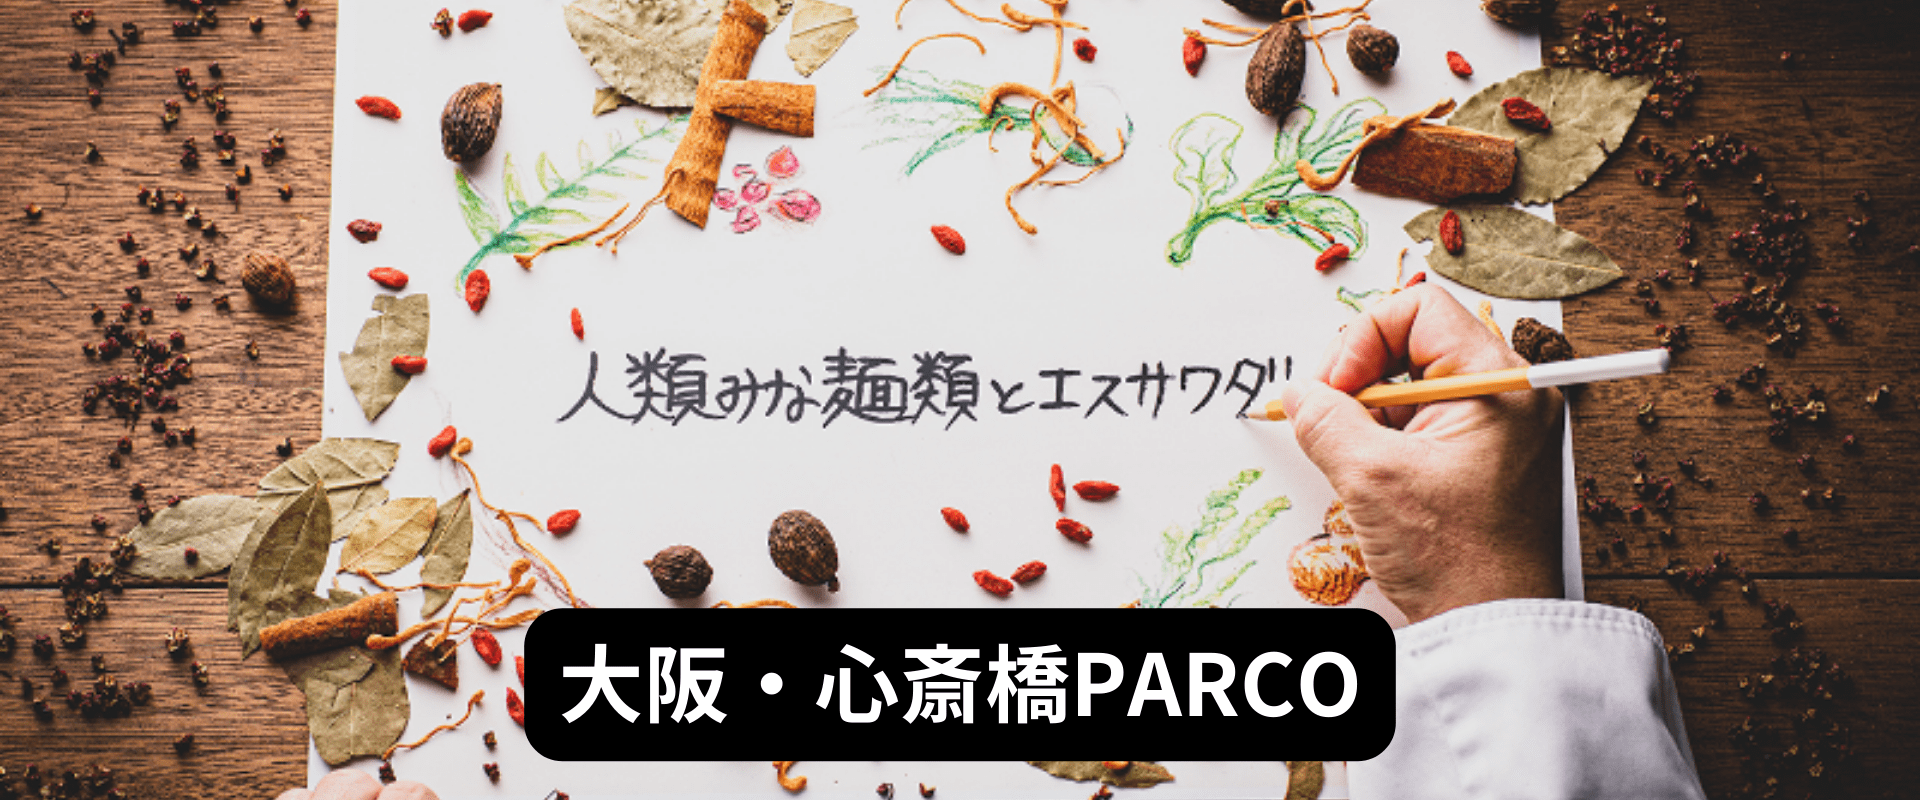 大阪・心斎橋PARCO